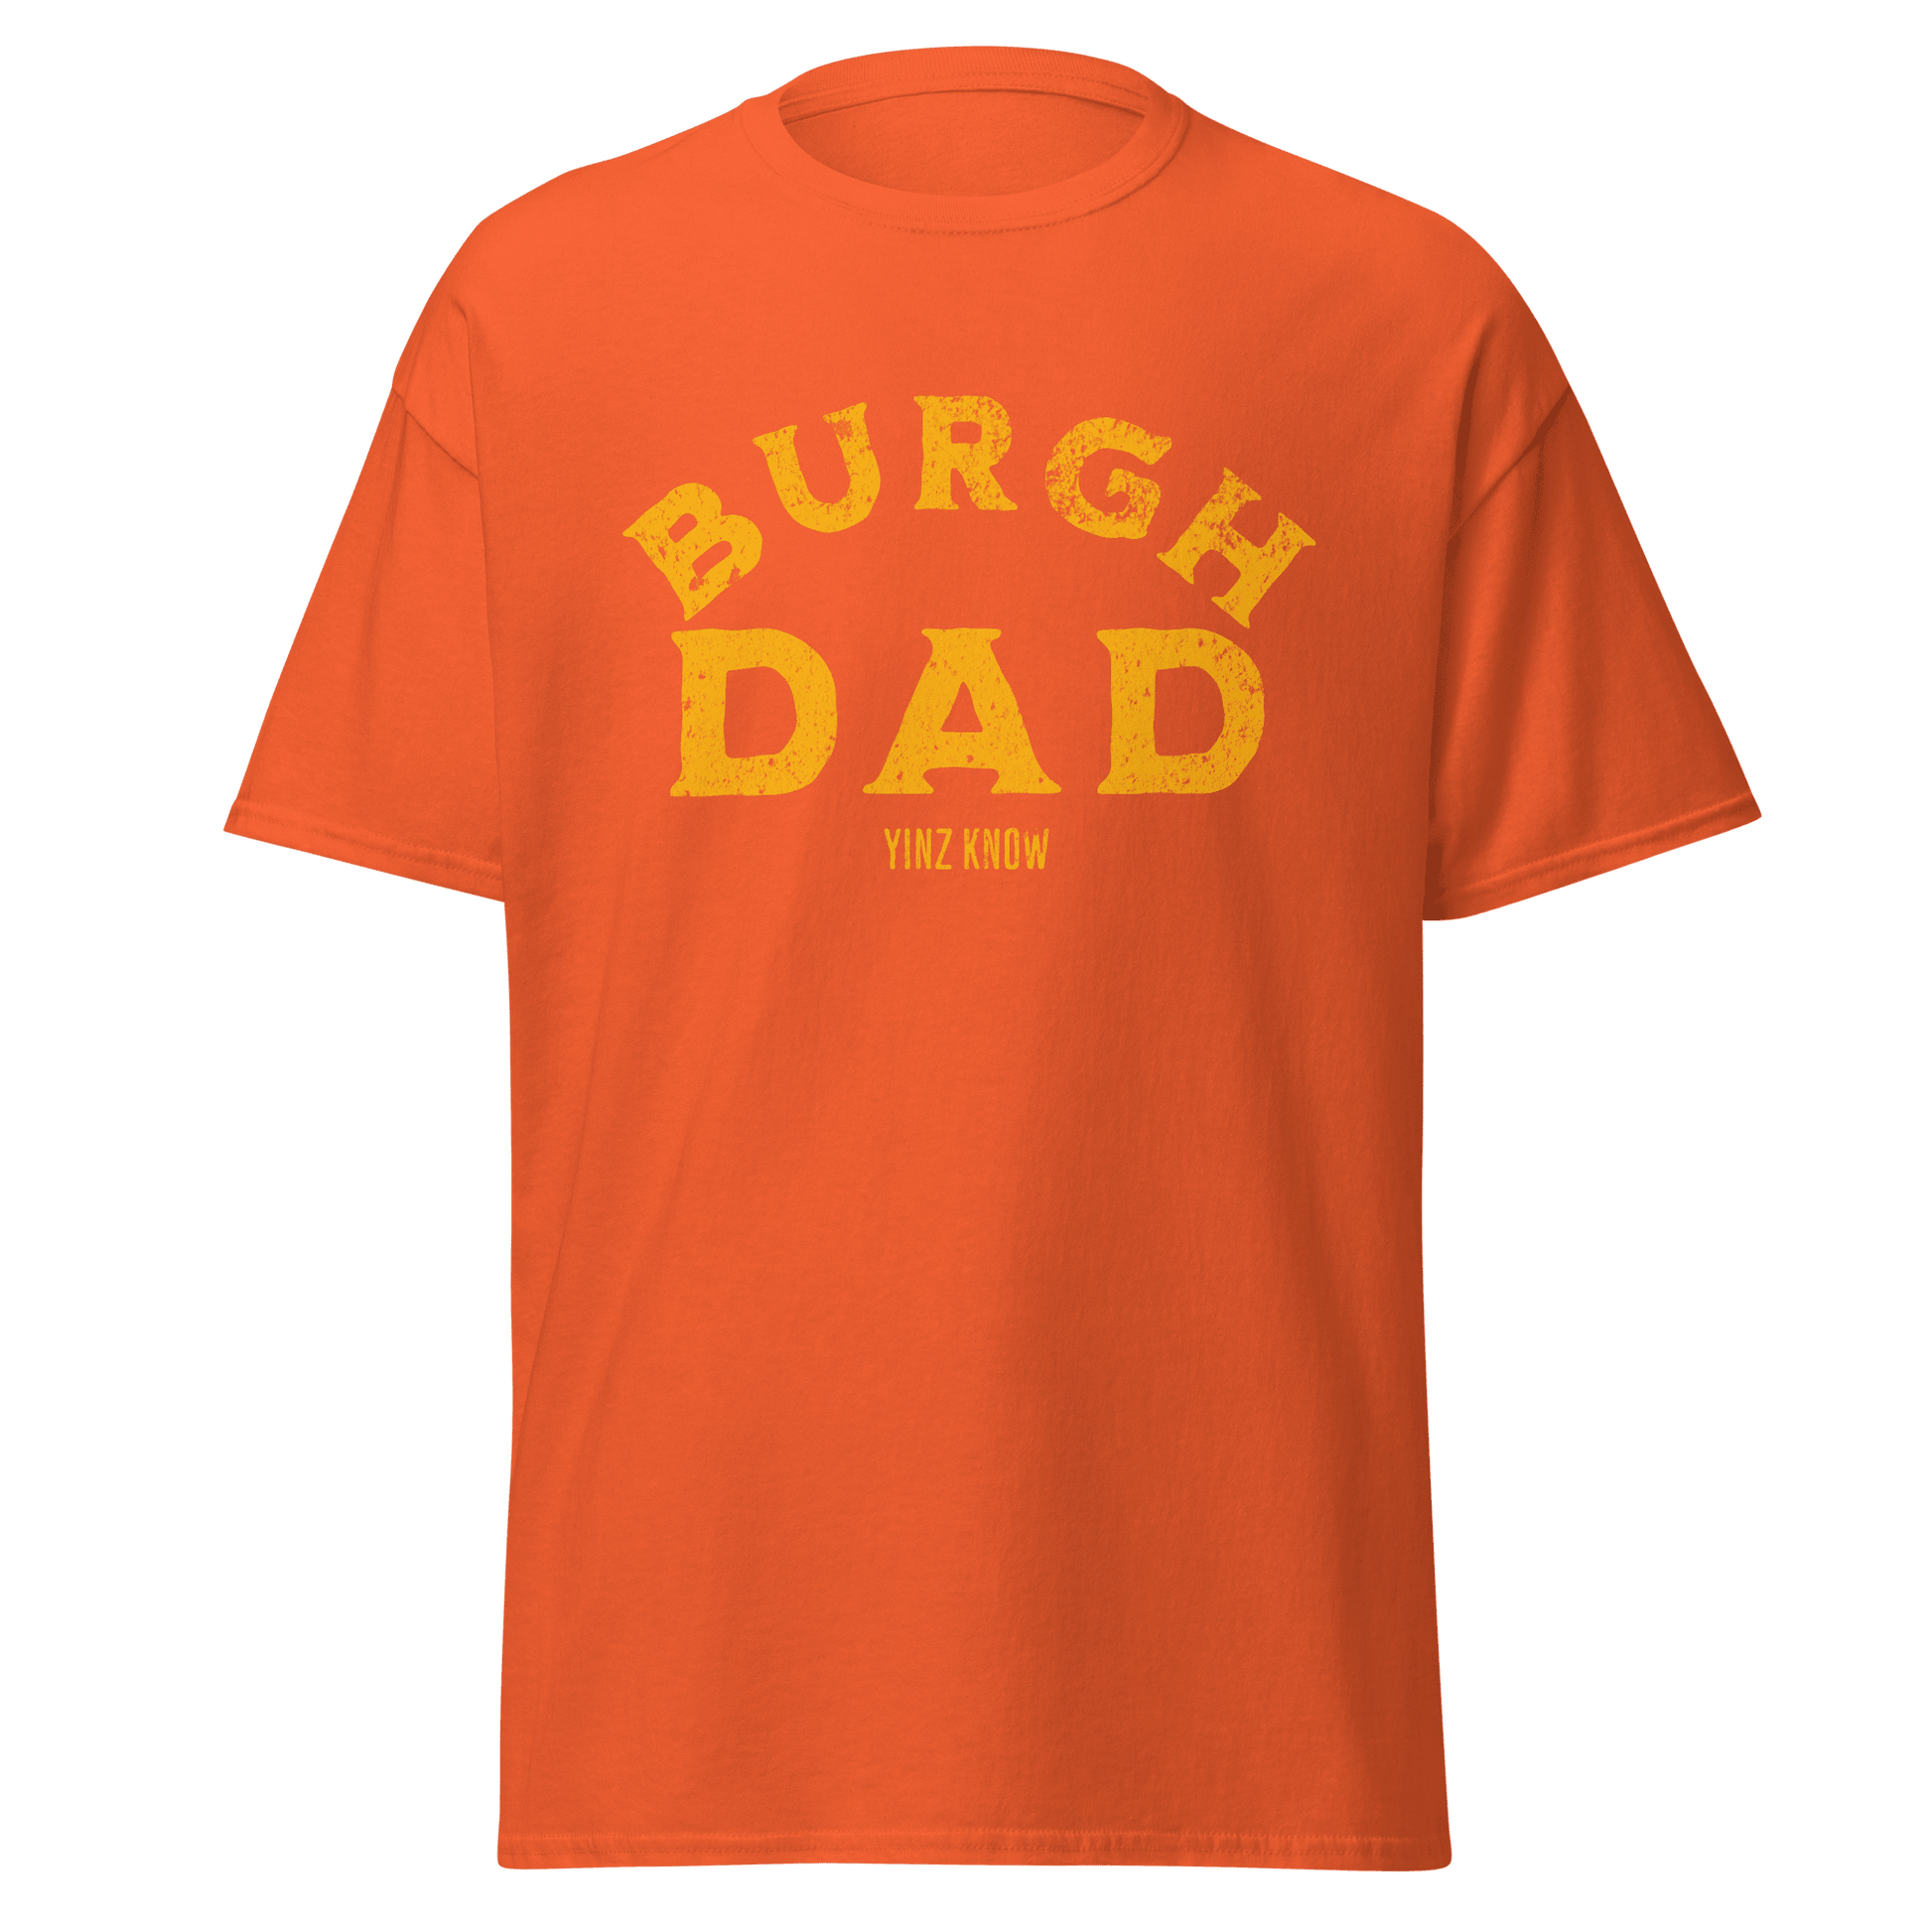 Burgh Dad T-Shirt Yinzergear Orange S 